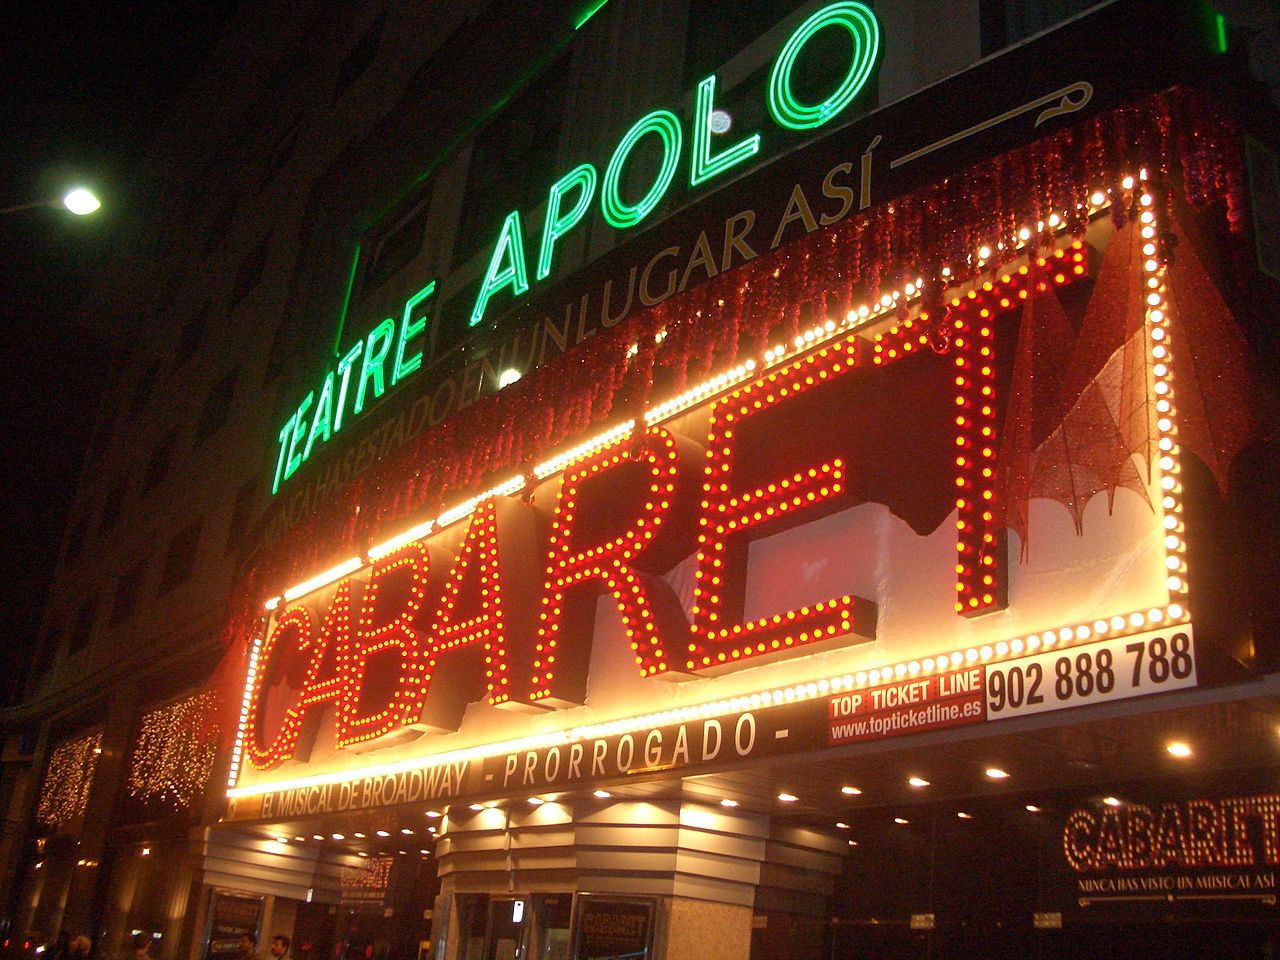 Ricard Reguant acusa els gestors del Teatre Apolo d'estafa